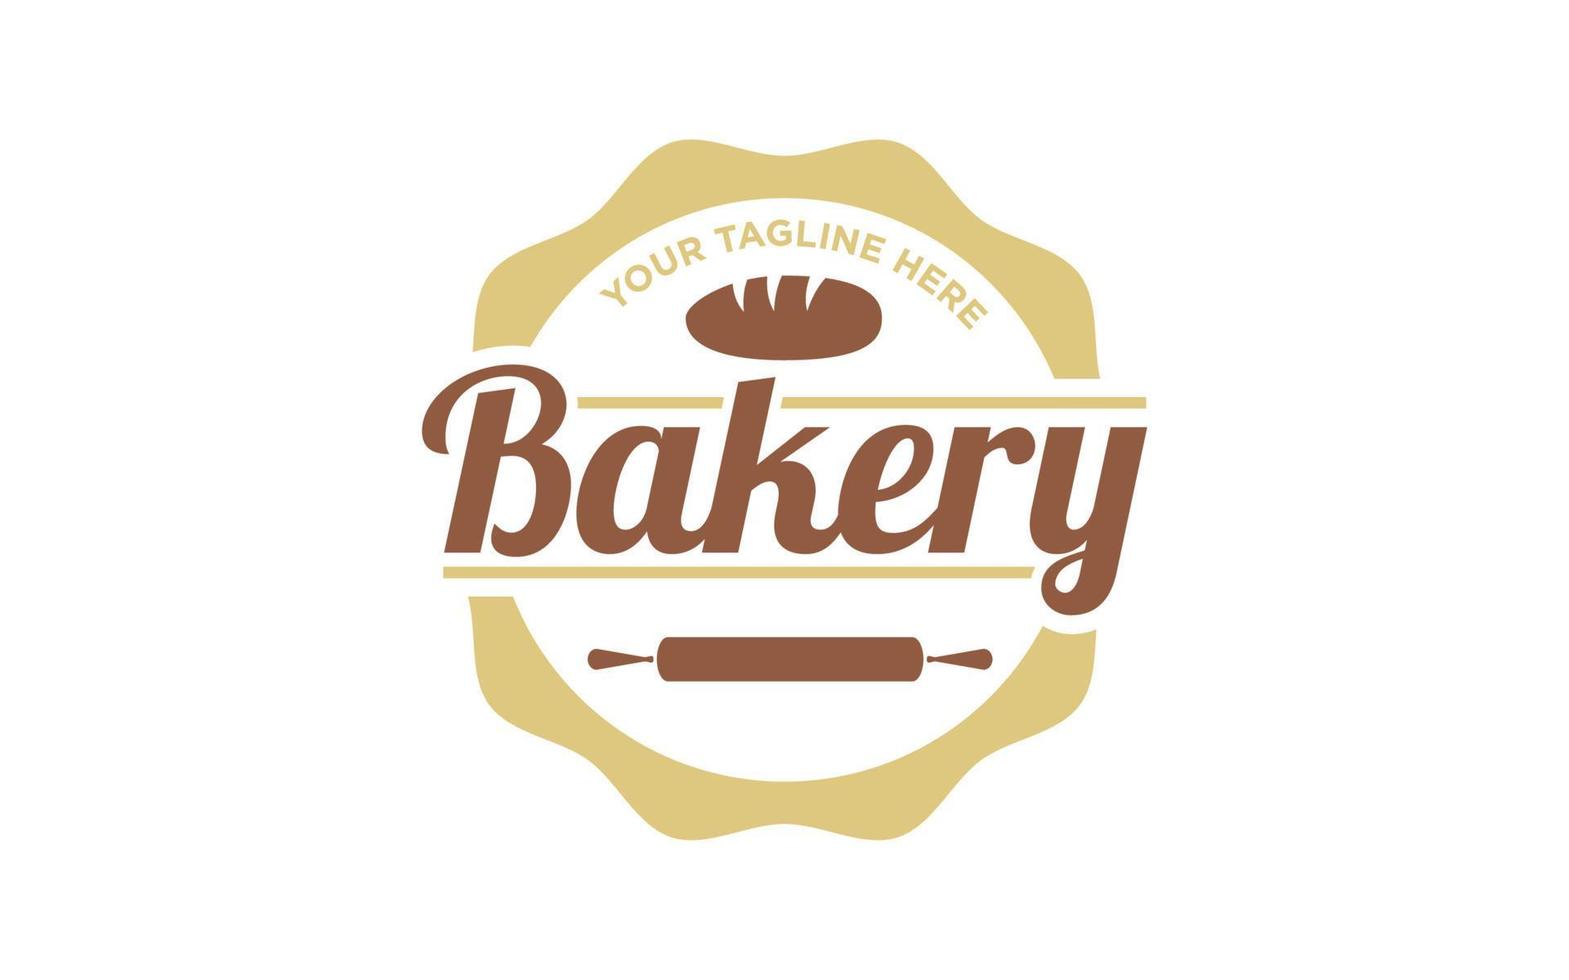 Vintage label Bakery Bake Shop Logo design vector 5264954 Vector Art at ...